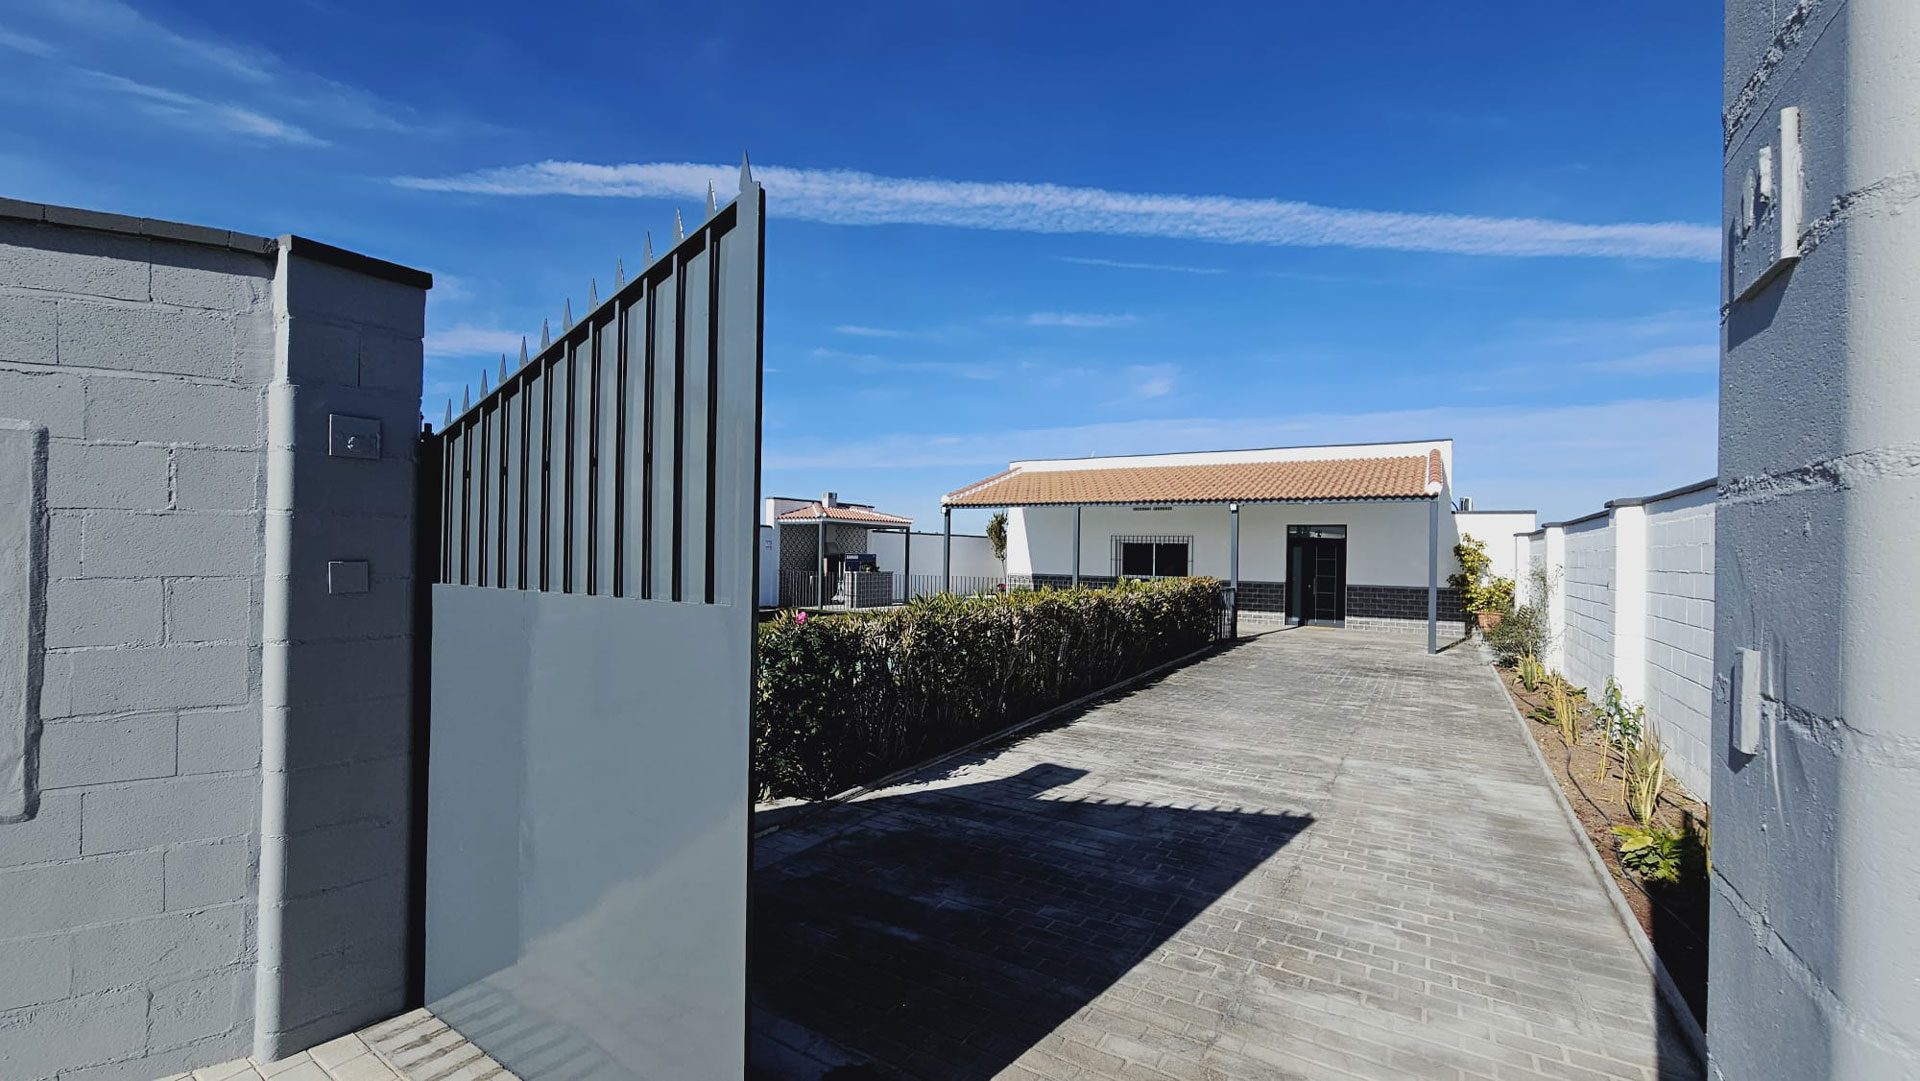 Casa rural con piscina privada en Campiña de Sevilla